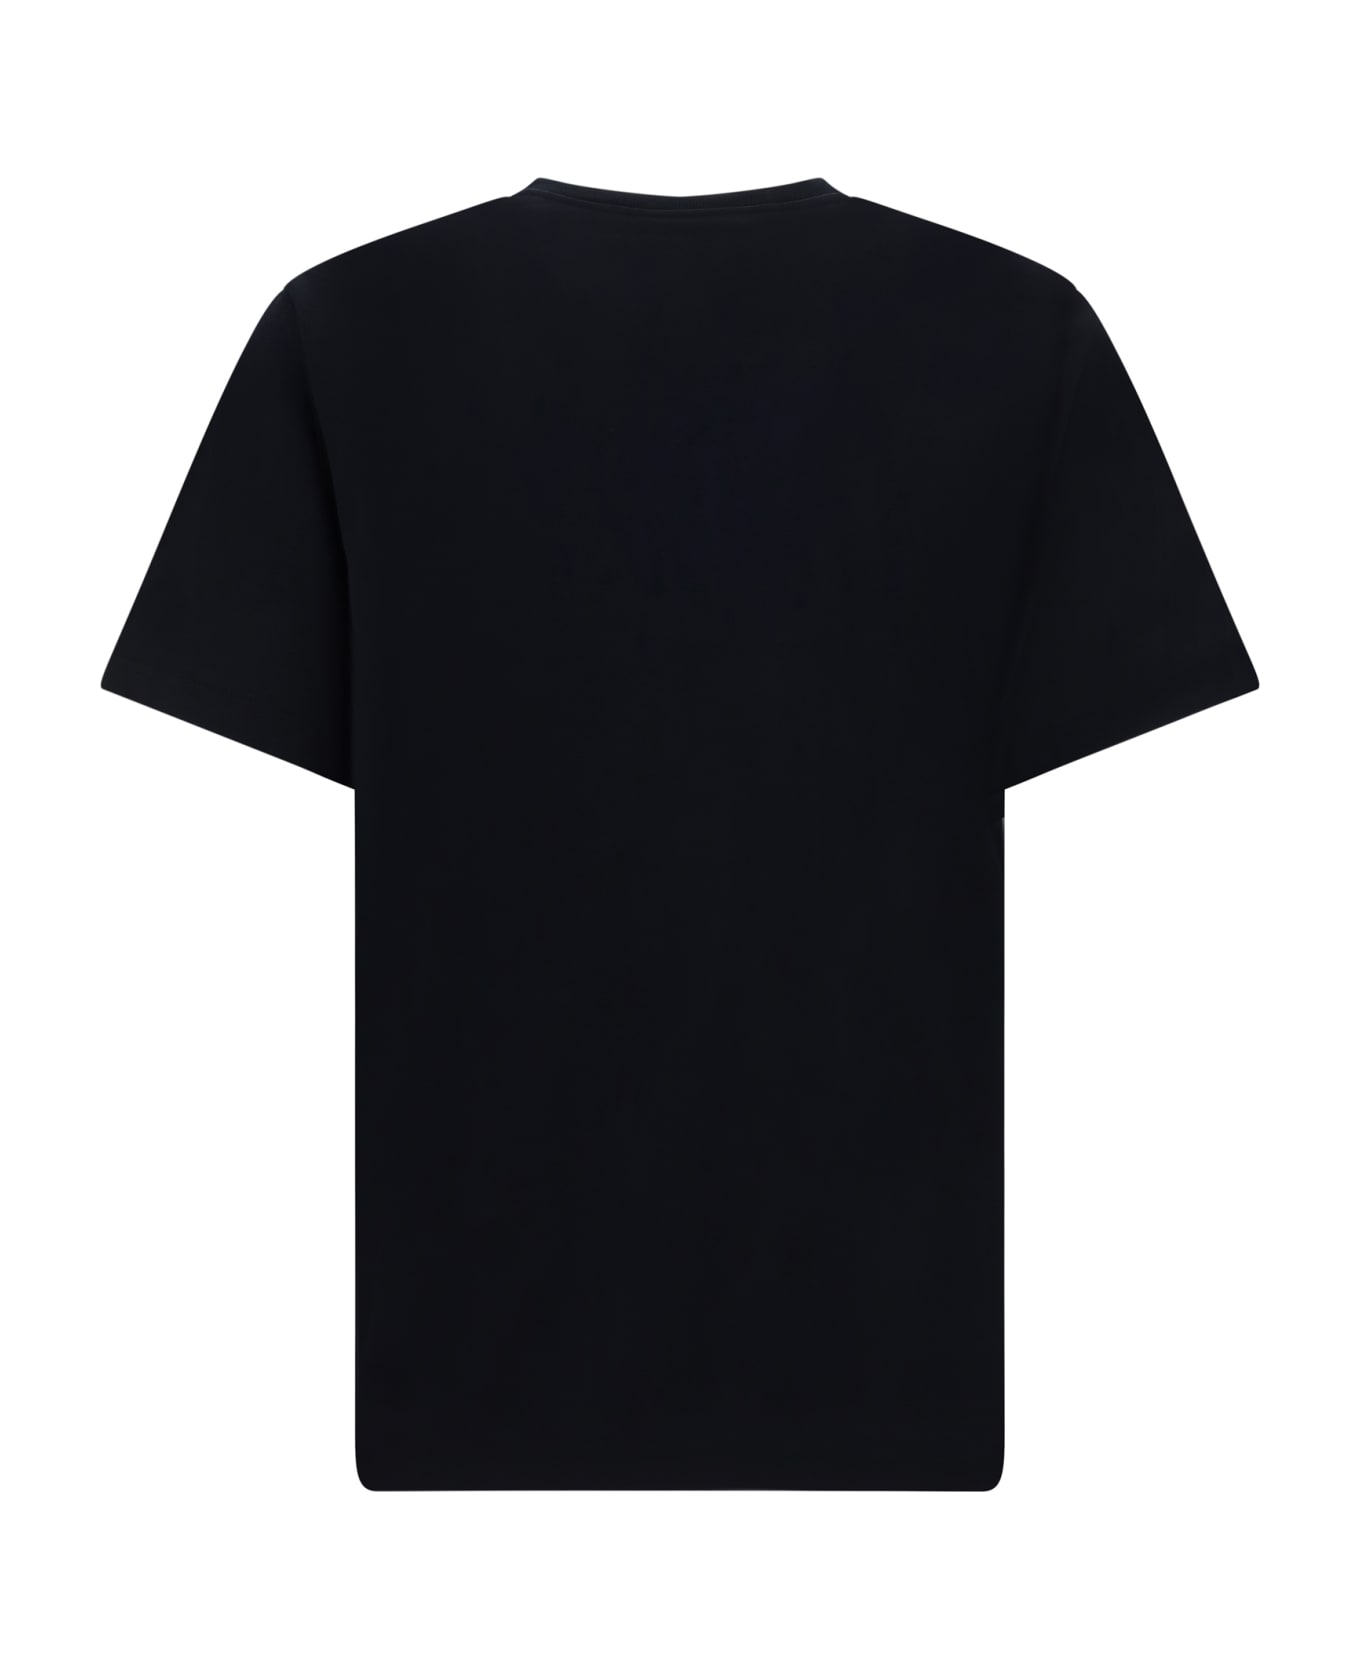 Maison Kitsuné T-shirt - Black/white